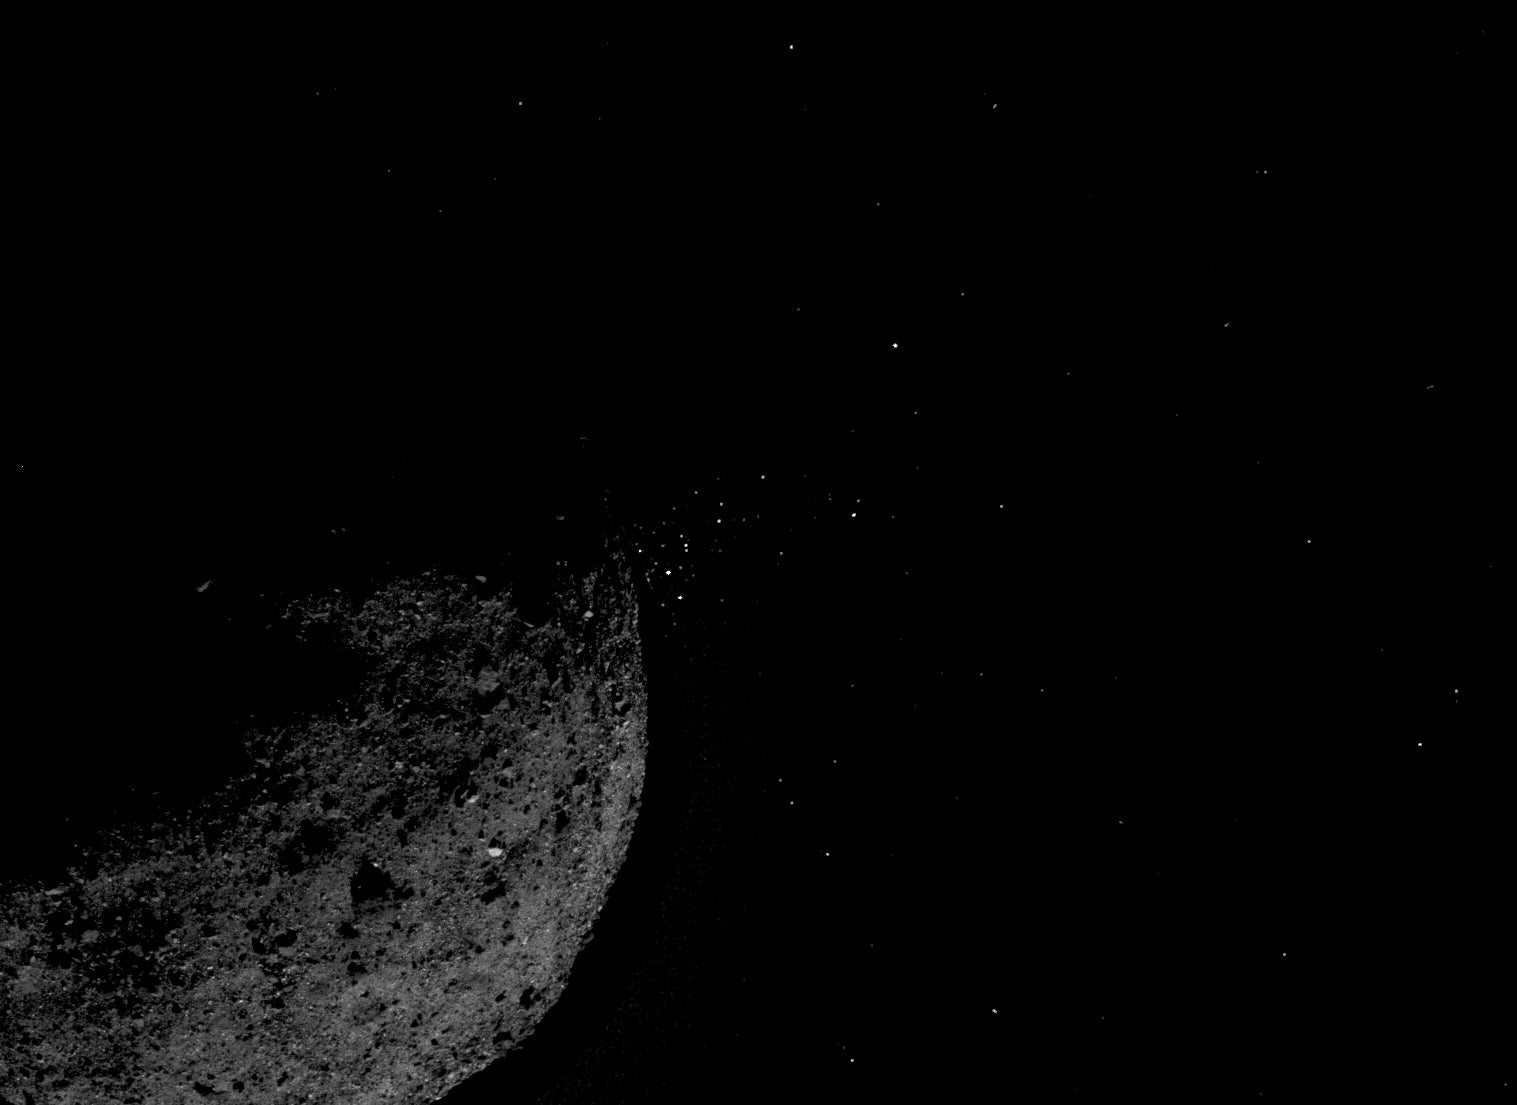 Esta vista del asteroide Bennu expulsando partículas de su superficie el 19 de enero fue creada combinando dos imágenes tomadas a bordo de la nave espacial OSIRIS-REx de la NASA.